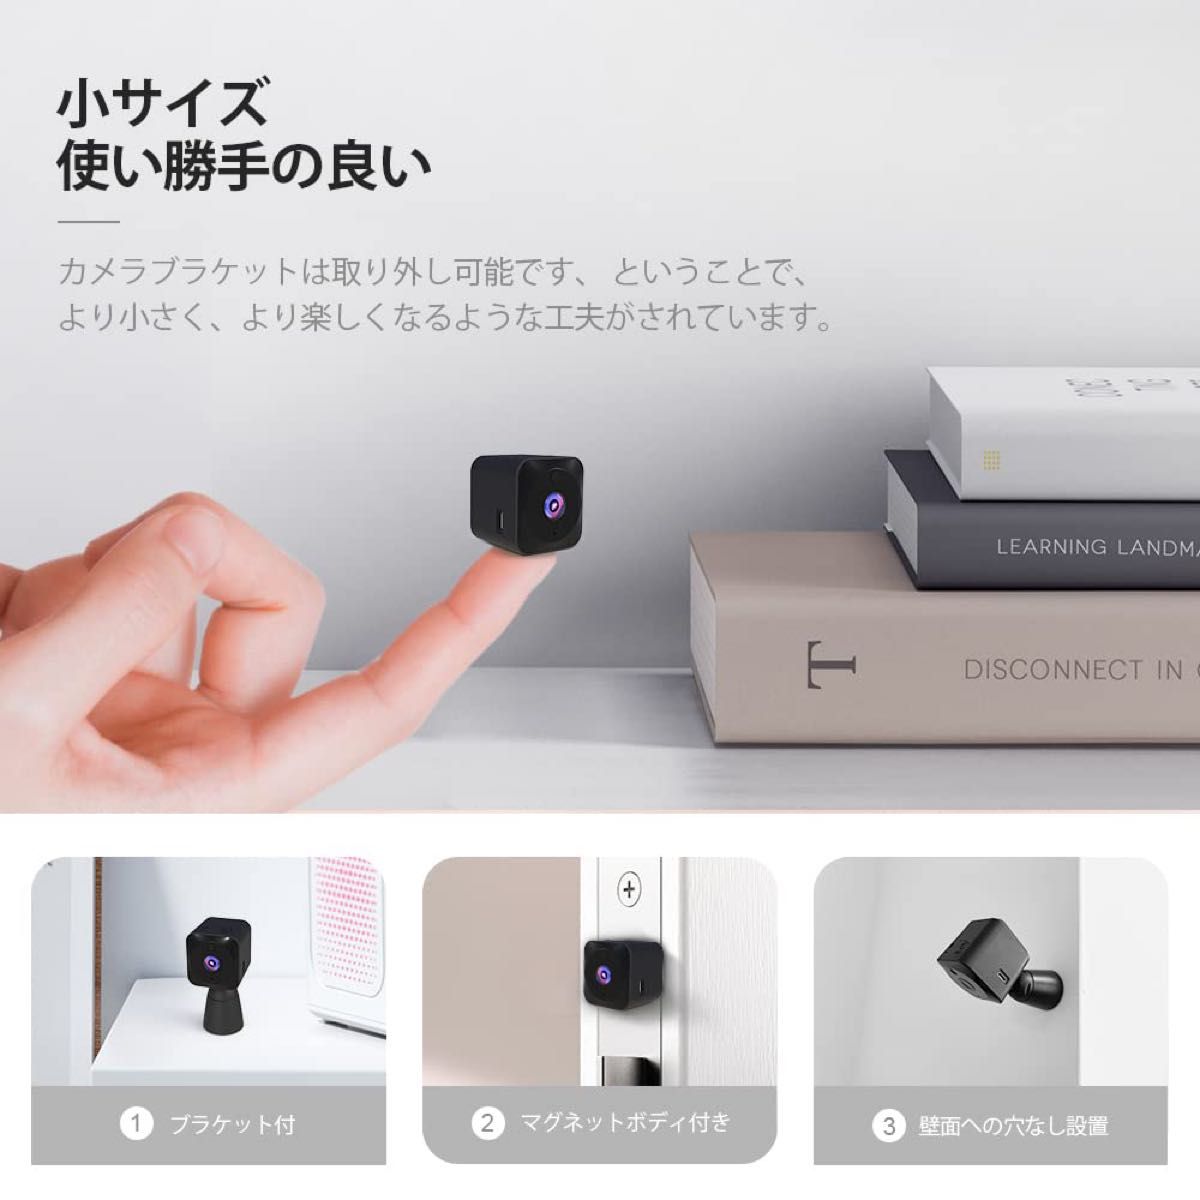 半額セール！aobo 小型カメラ 防犯カメラ WIFI機能付き 2023 4K UHD 画質 録音録画 遠隔監視日本語取扱説明書付